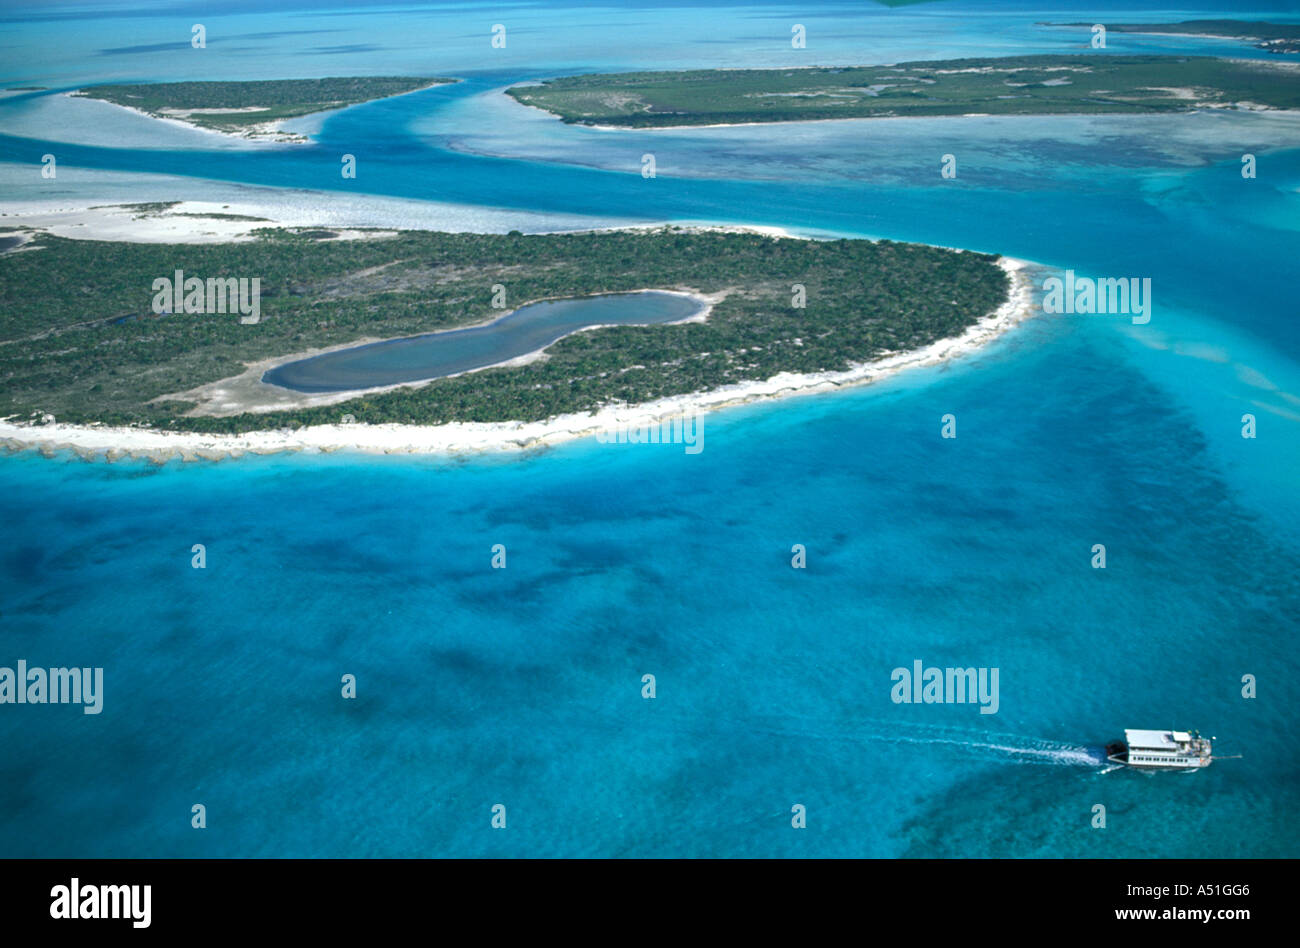 Foto aerea Isole Turks e Caicos blu verde mare dei caraibi orientali isole dei Caraibi non sviluppata Foto Stock